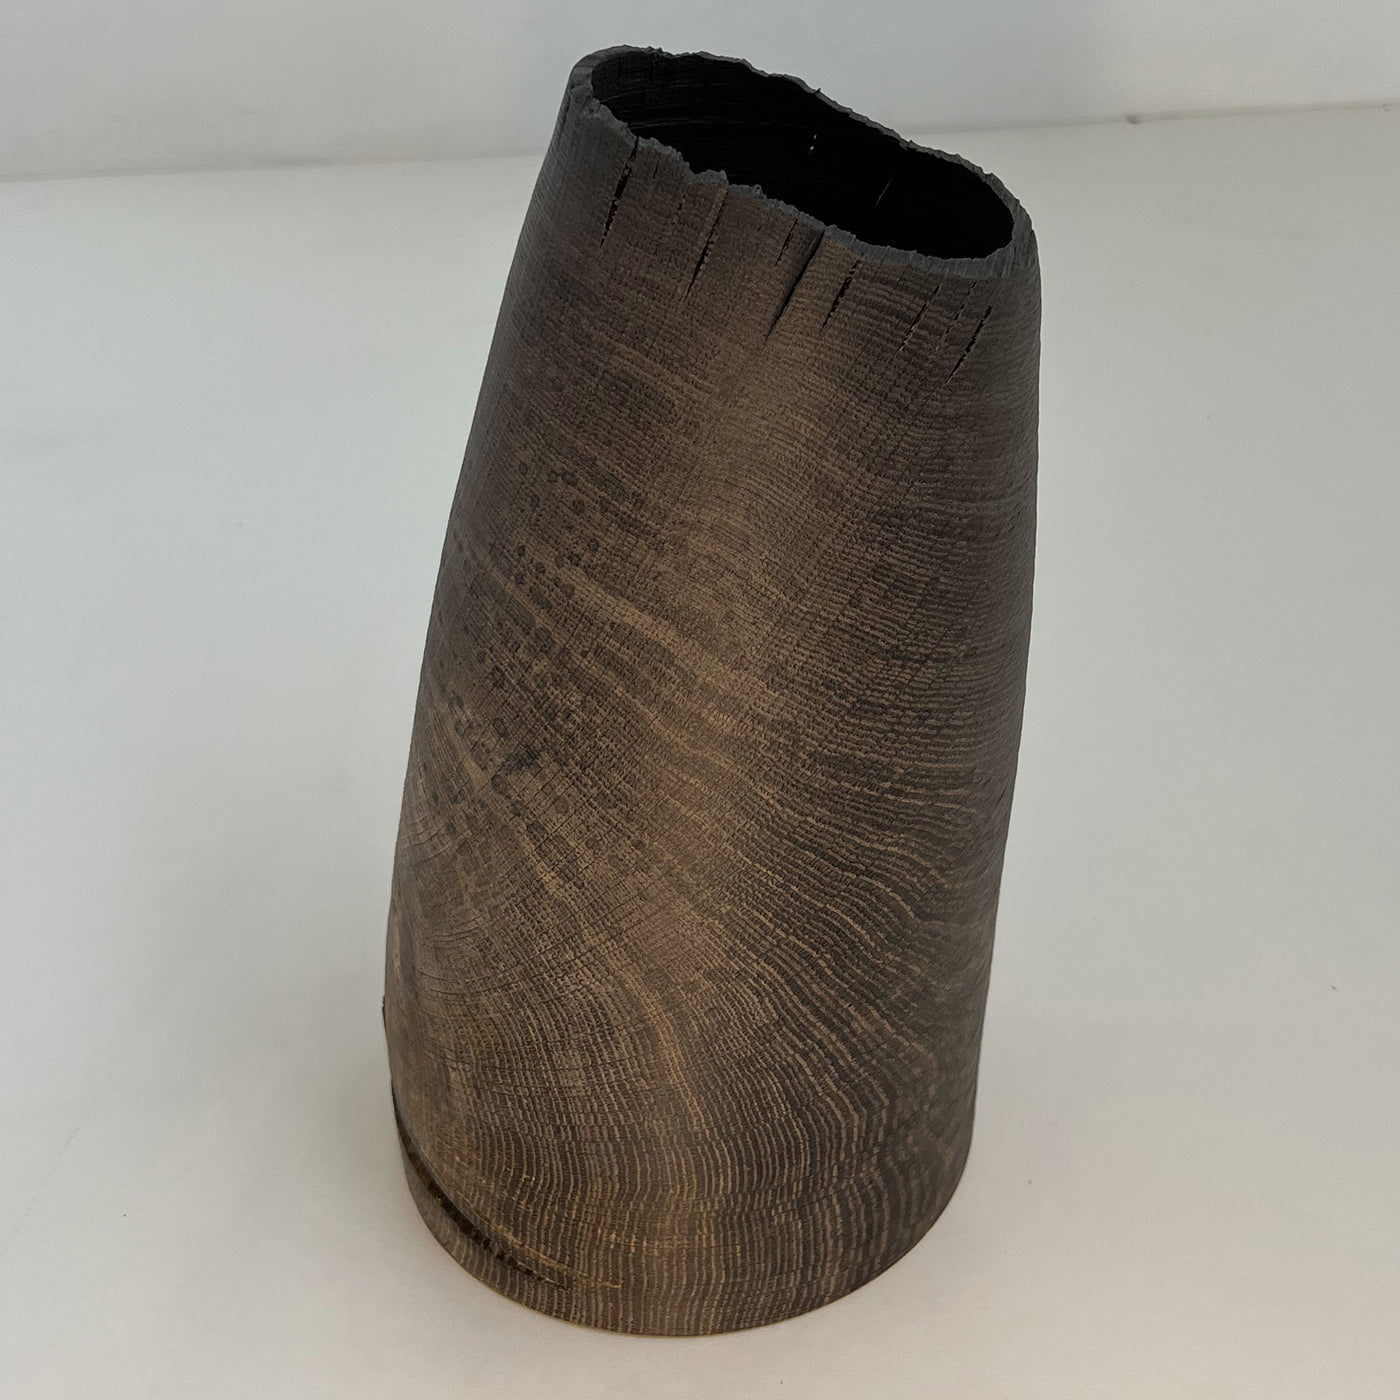 Vase creux en chêne fossile #2 - Vue alternative 3